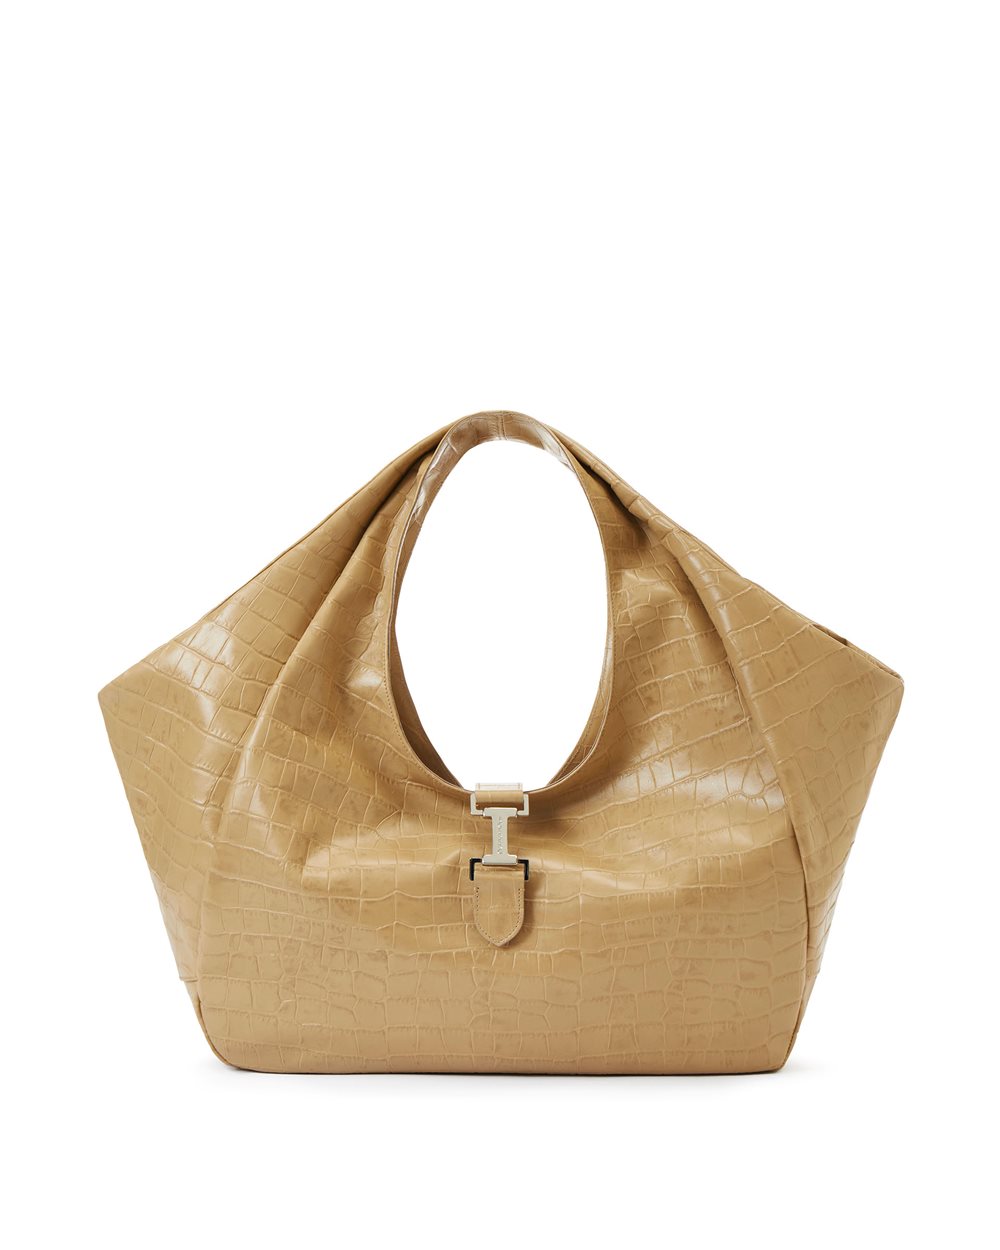 Shoulder bag with logo - Bags & Belt | Iceberg - Official Website